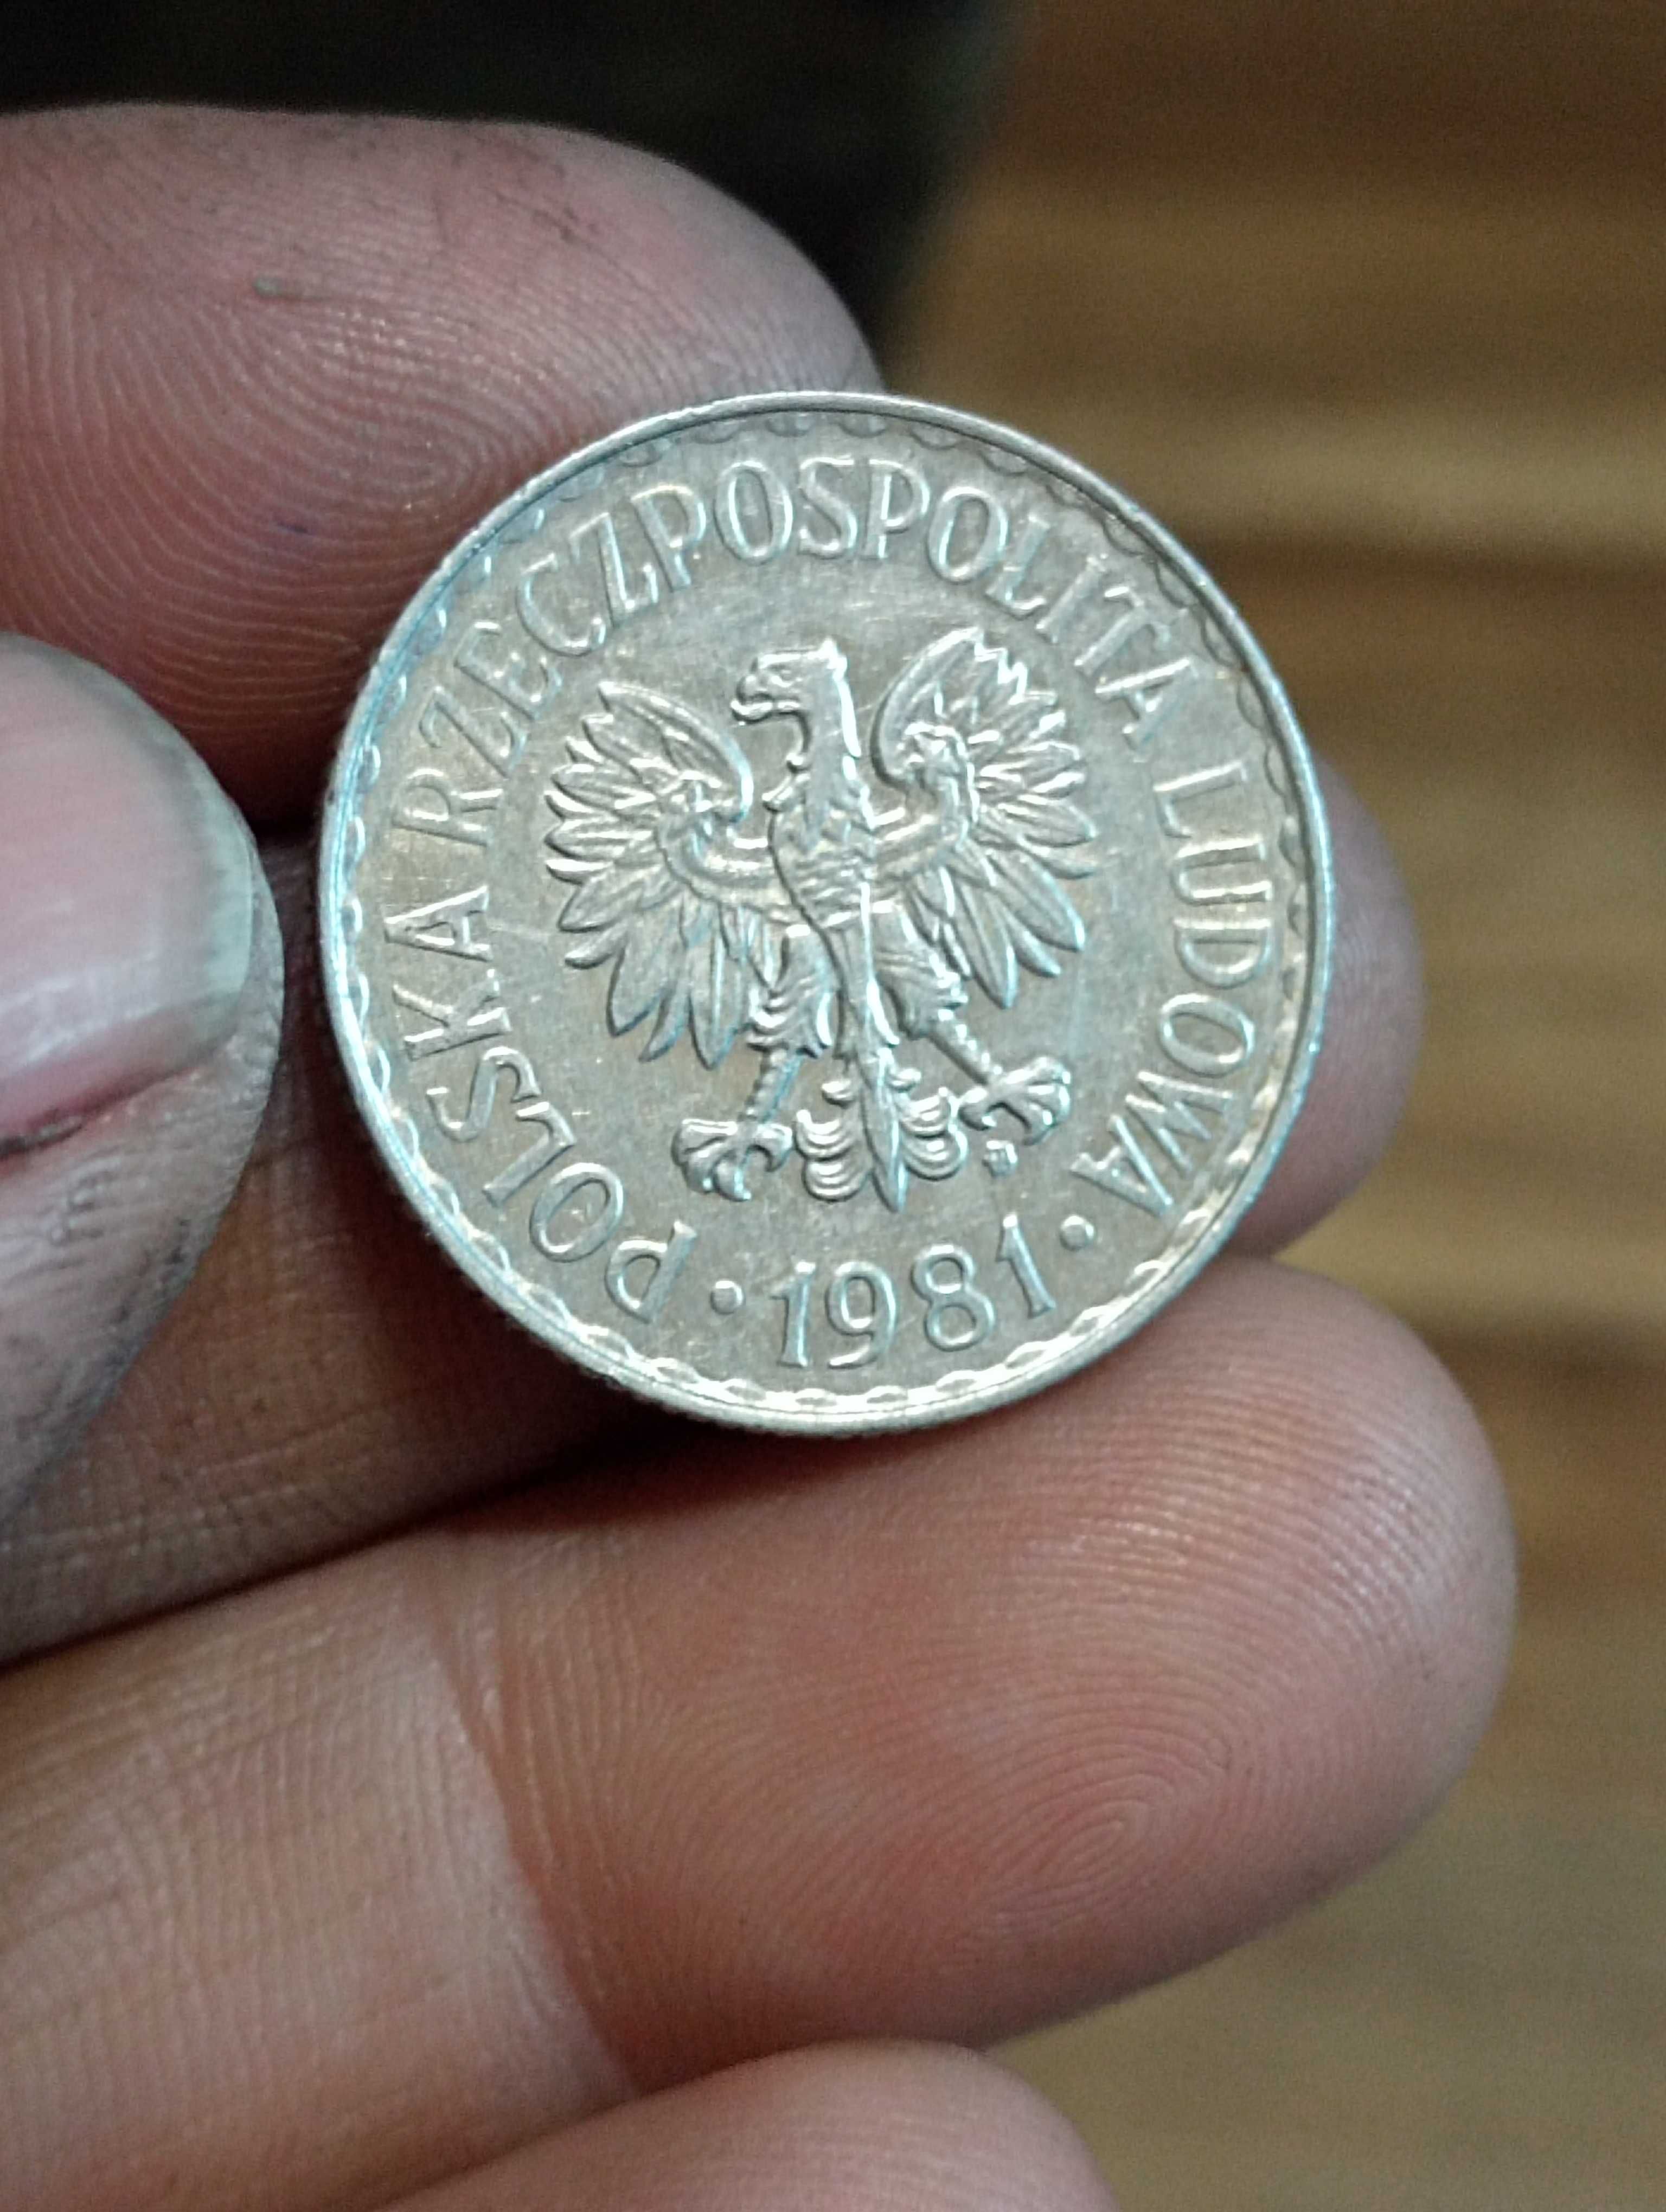 Sprzedam monete 1 zl 1981